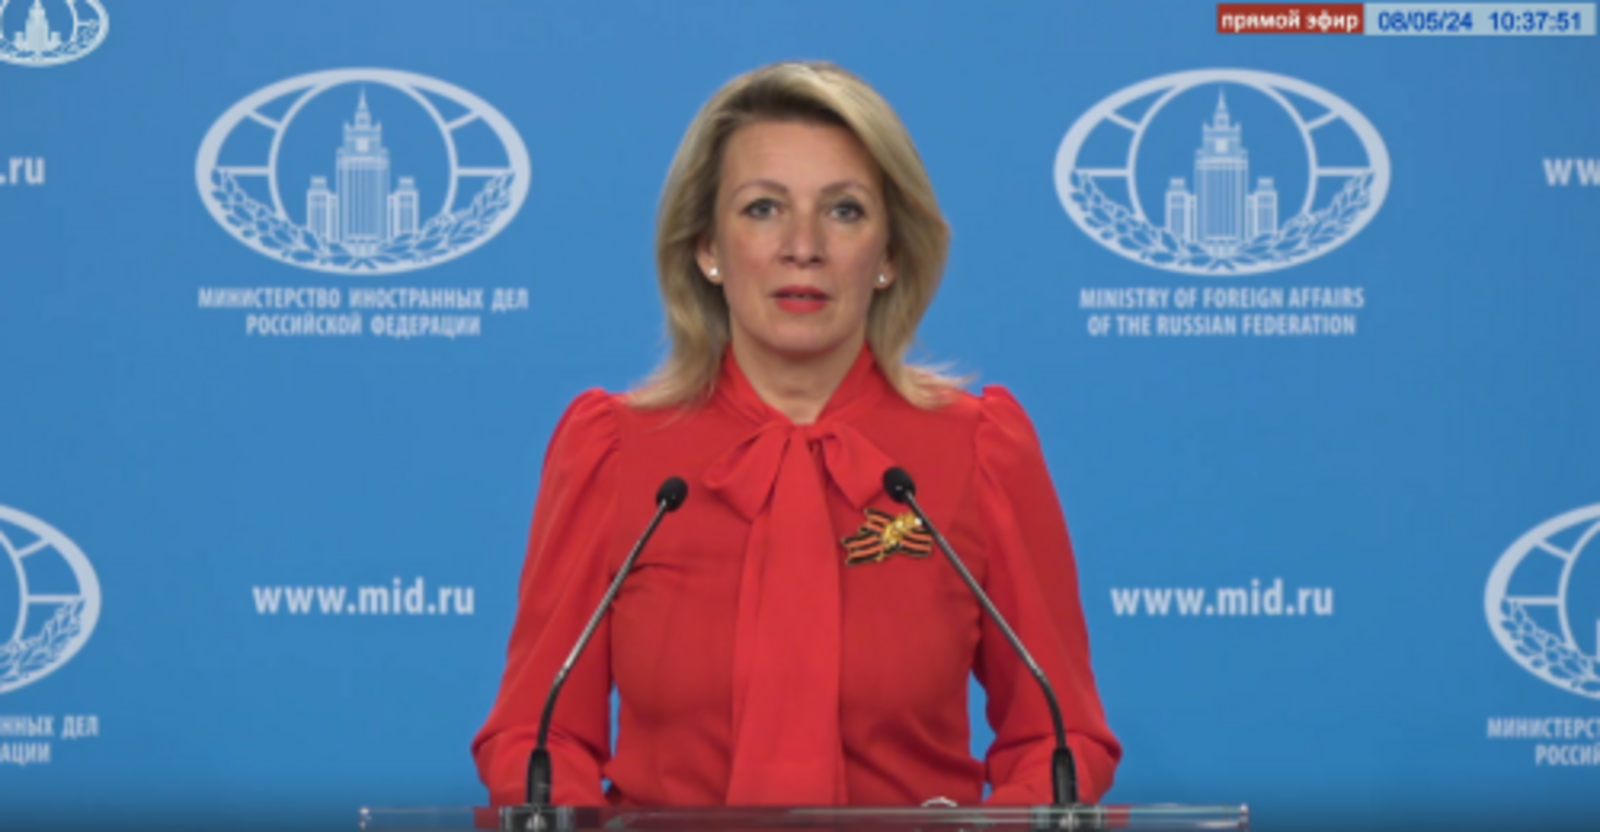 Мария Захарова назвала Всероссийский инвестиционный сабантуй «Зауралье» в Башкортостане ведущей мировой площадкой